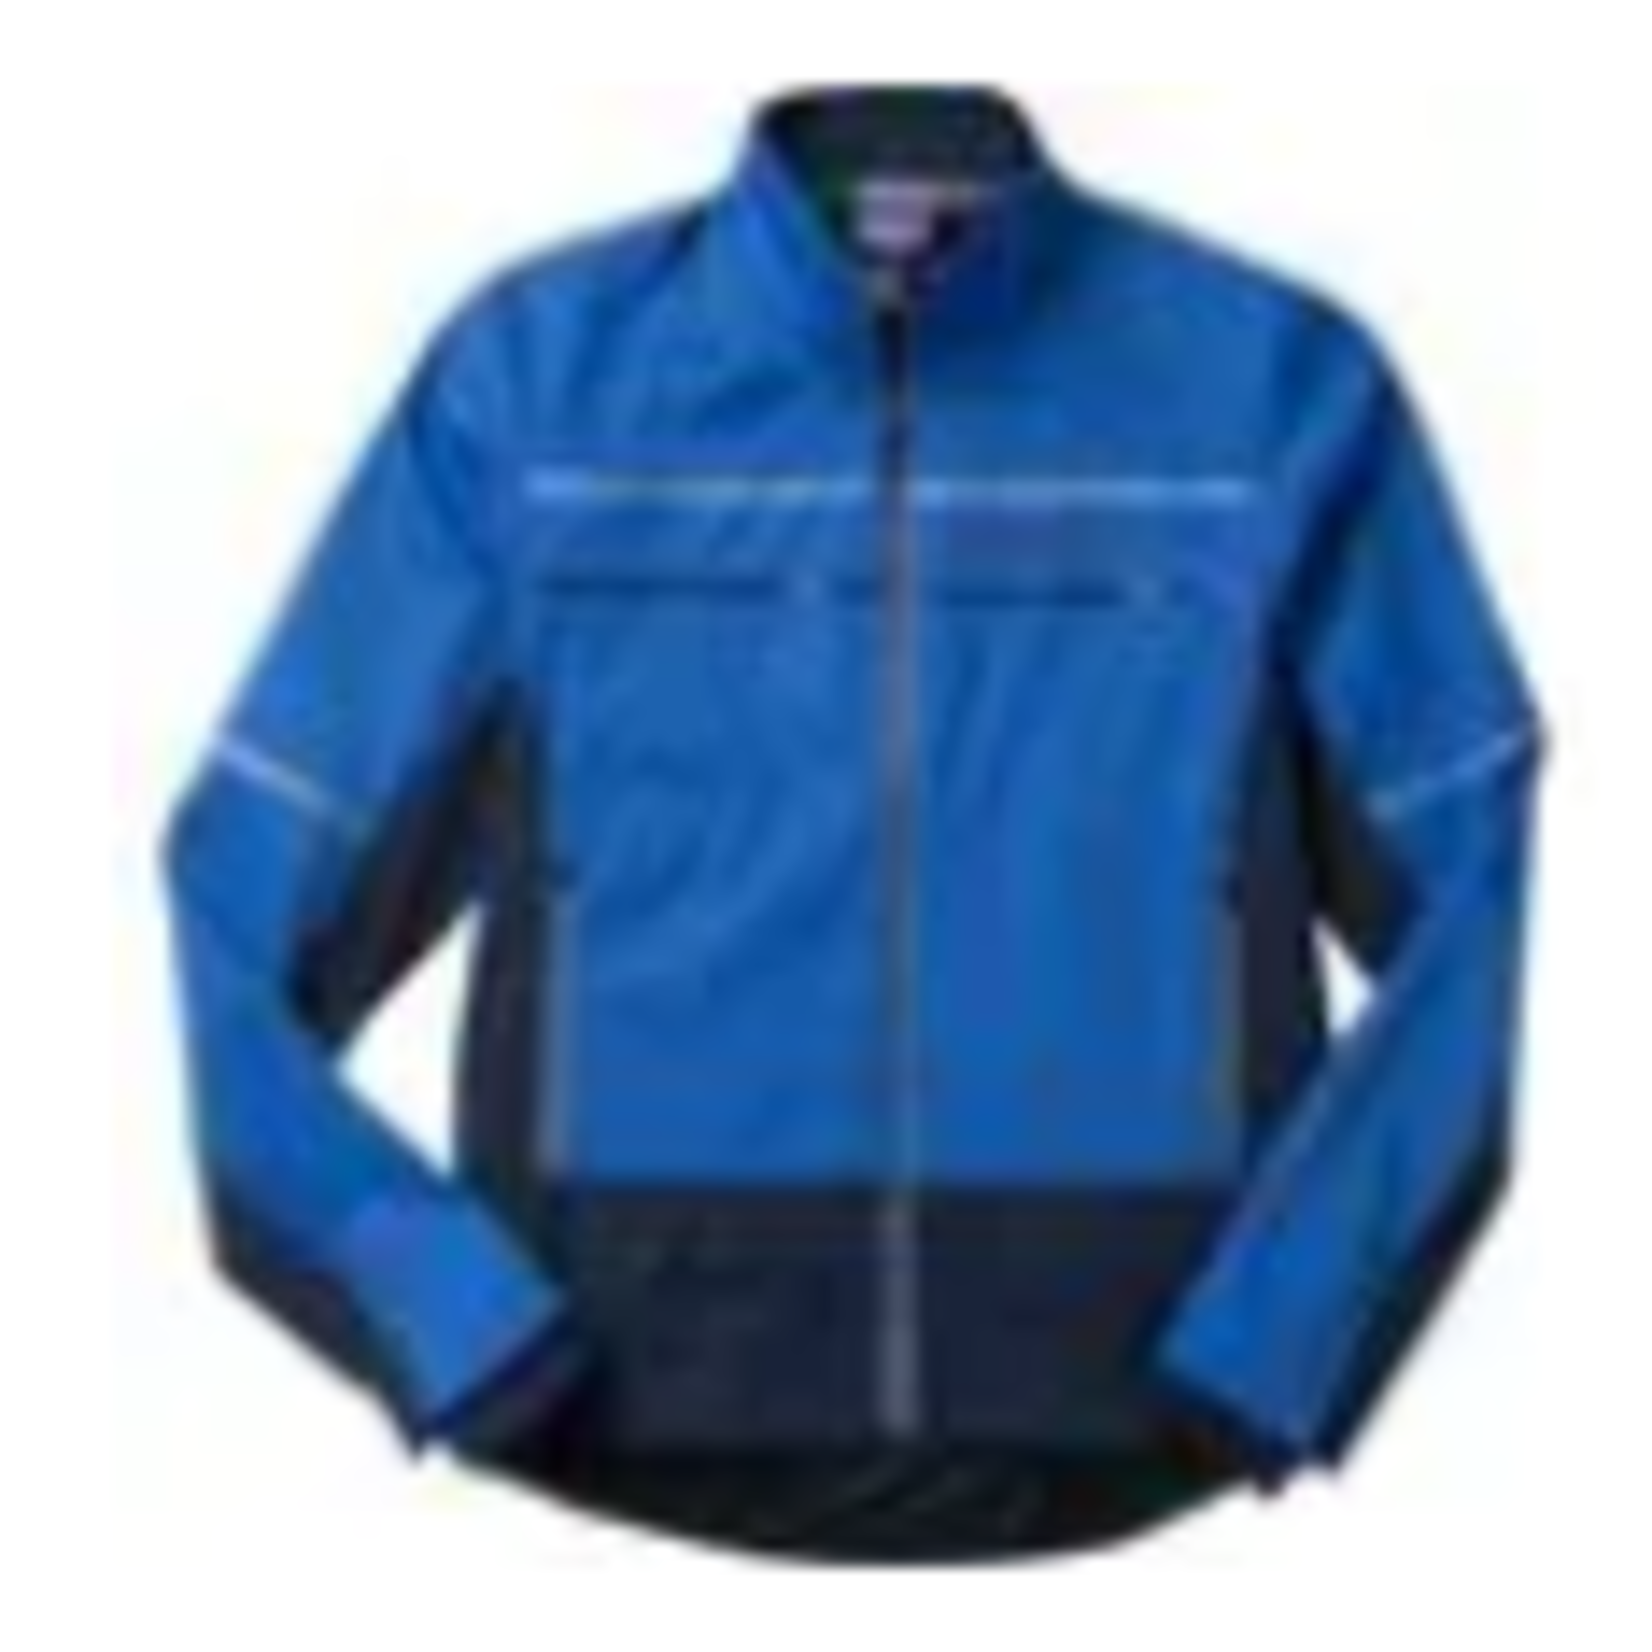 SWIX TOKKE Men's Light Softshell Jacket (72107) Olympian blue L